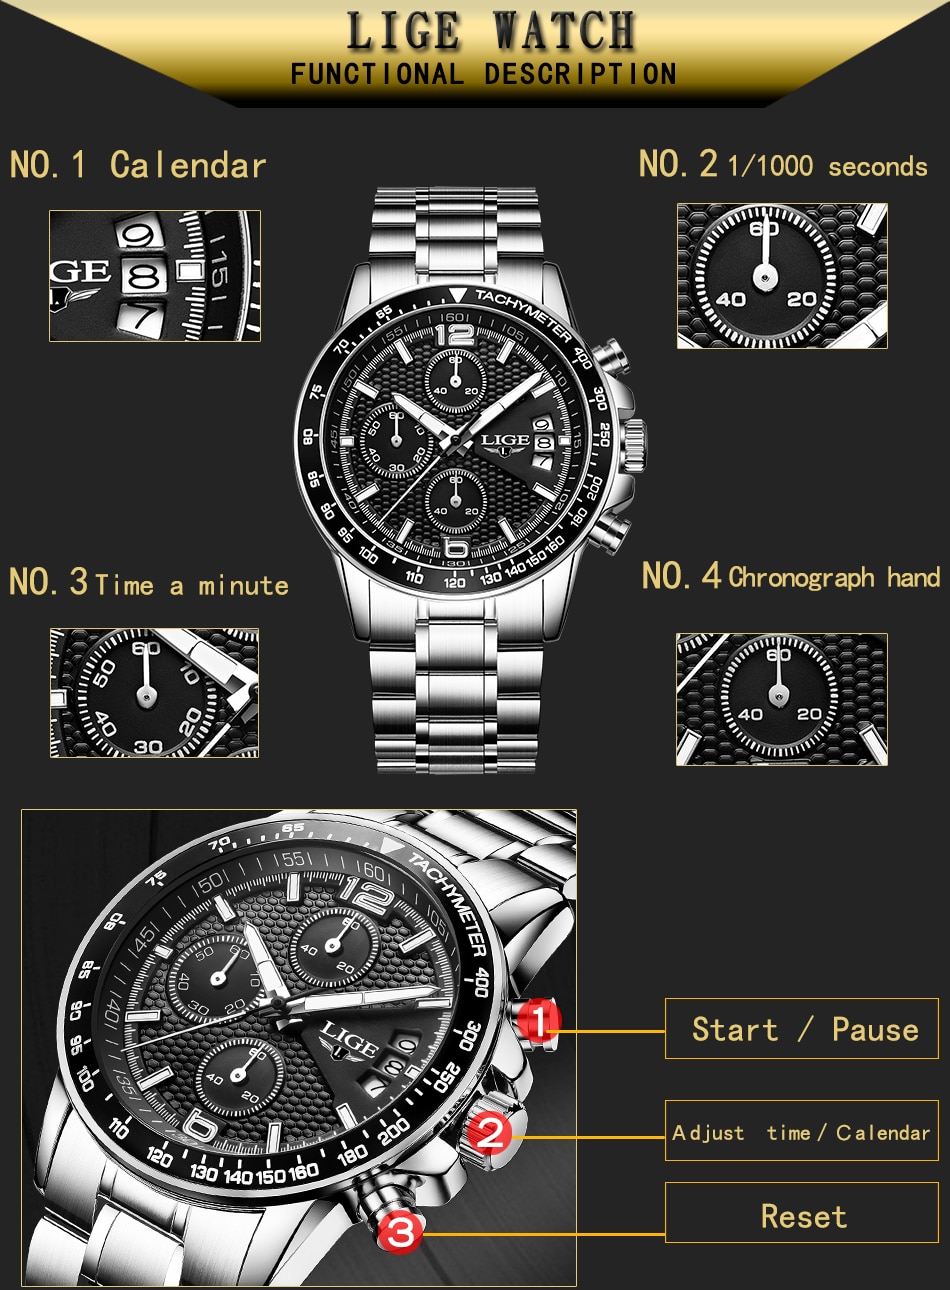 LIGE 0002 Men's Business Quartz Watch